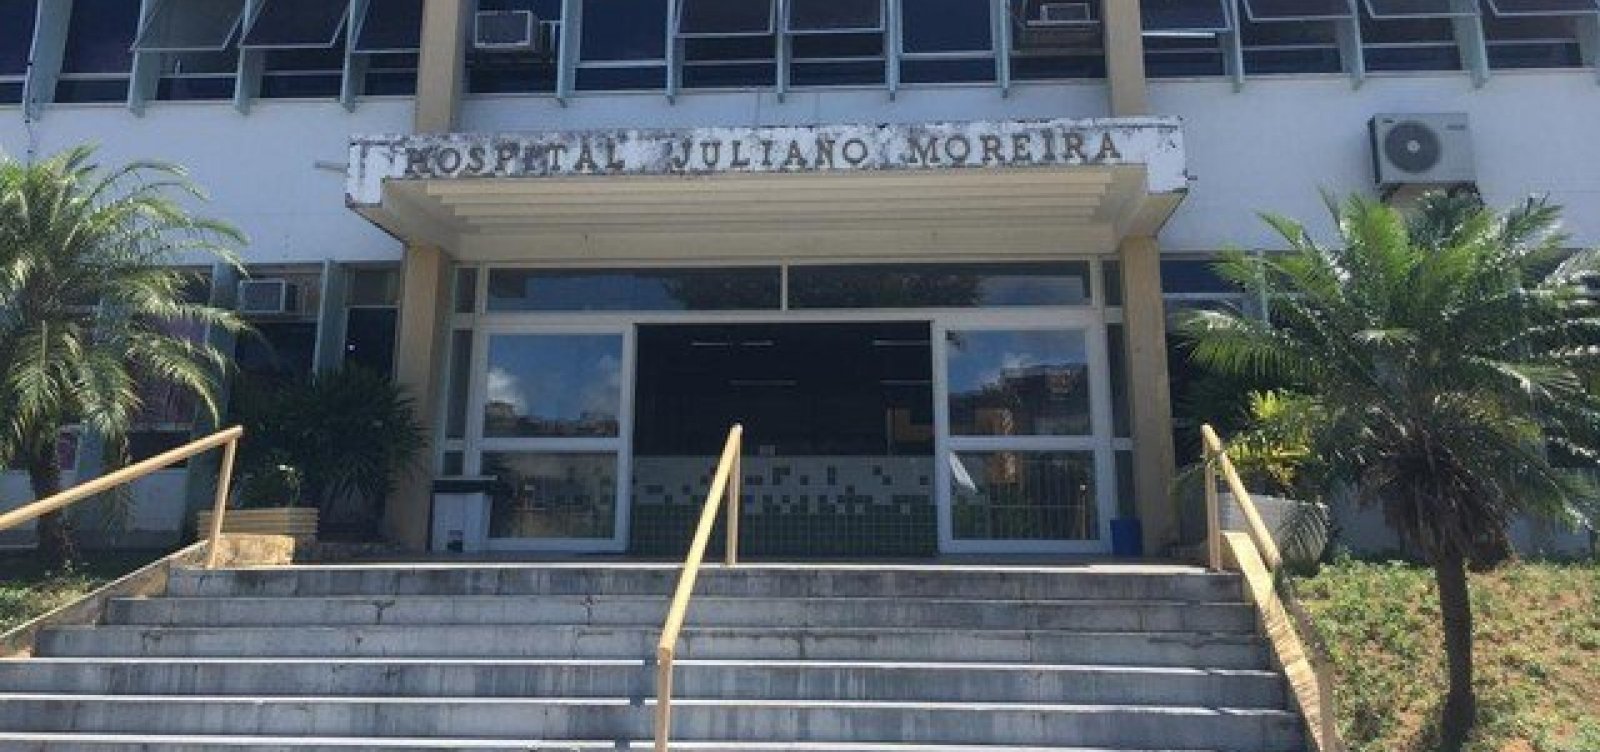 Após registrar 16 casos de Covid-19 em 10 dias, Hospital Juliano Moreira suspende visitas